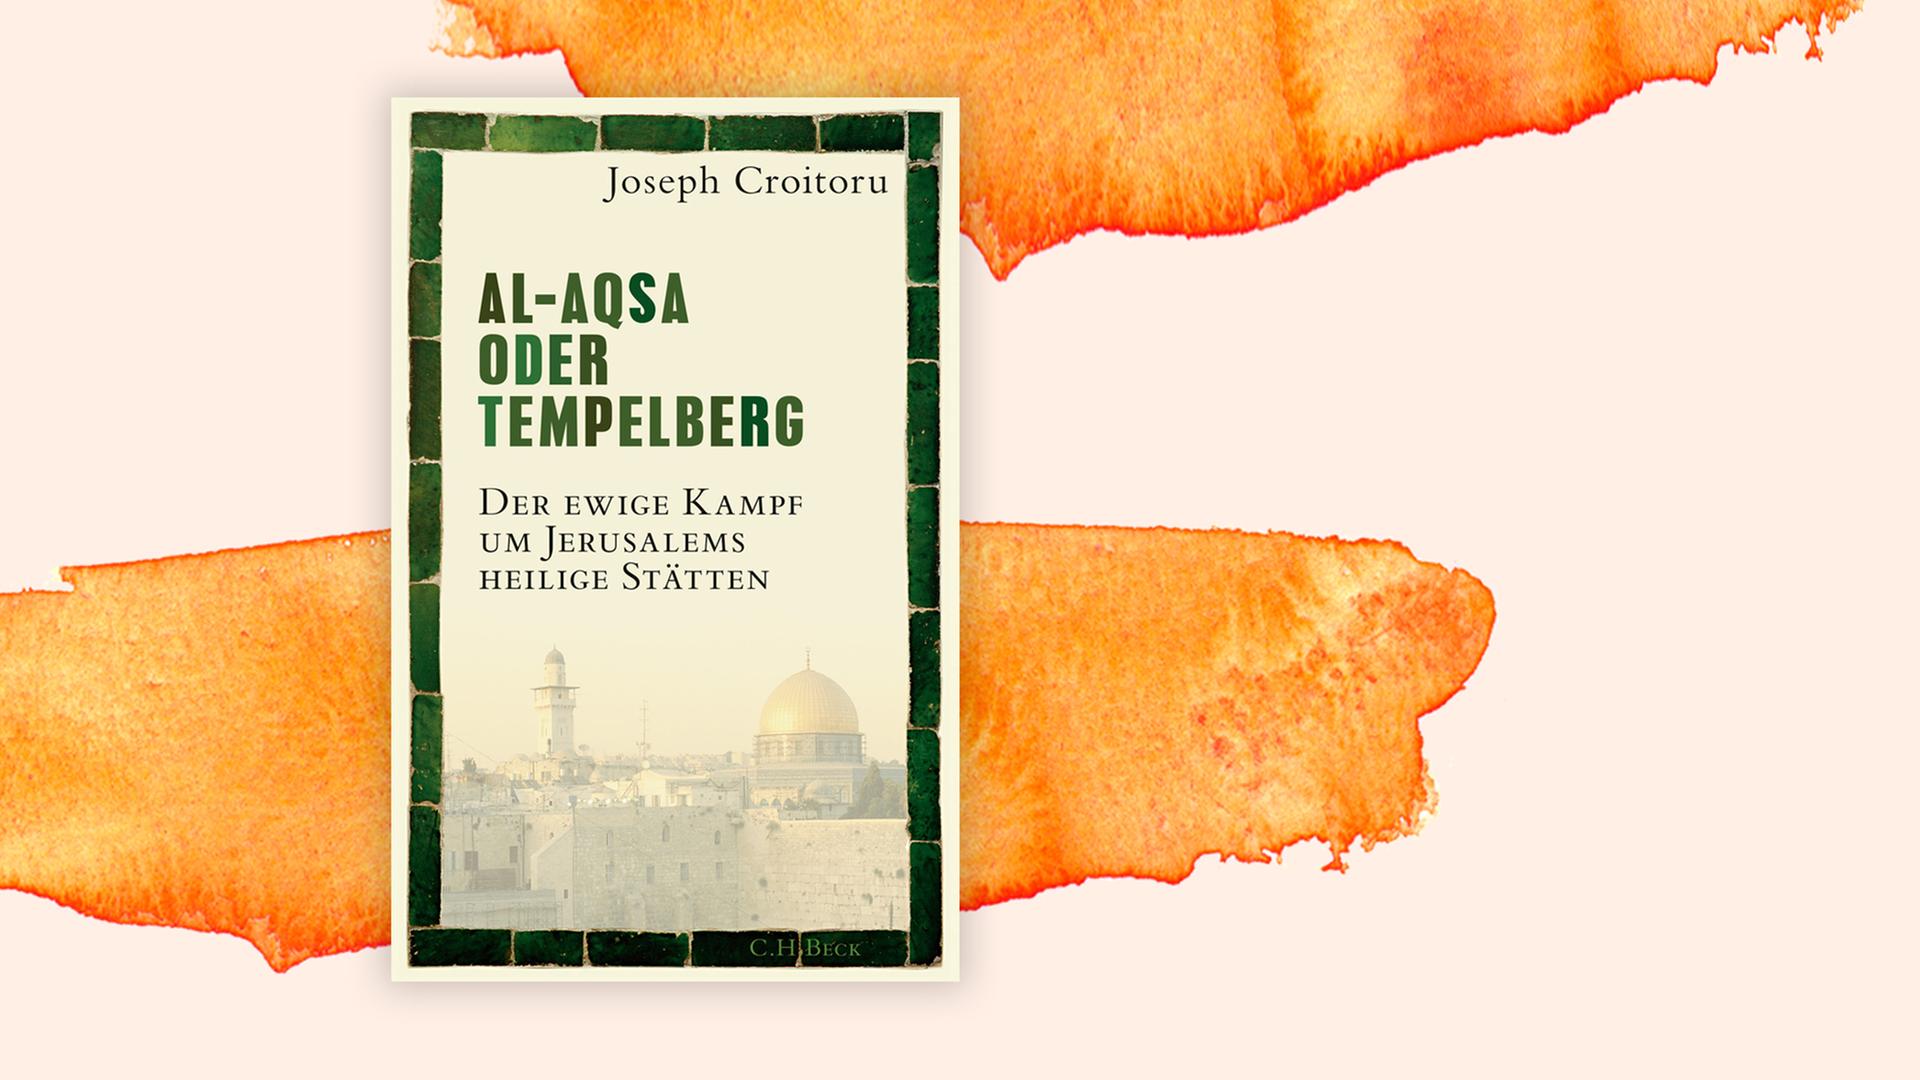 Das Buchcover "Al-Aqsa oder Tempelberg" von Joseph Croitoru ist vor einem grafischen Hintergrund zu sehen.